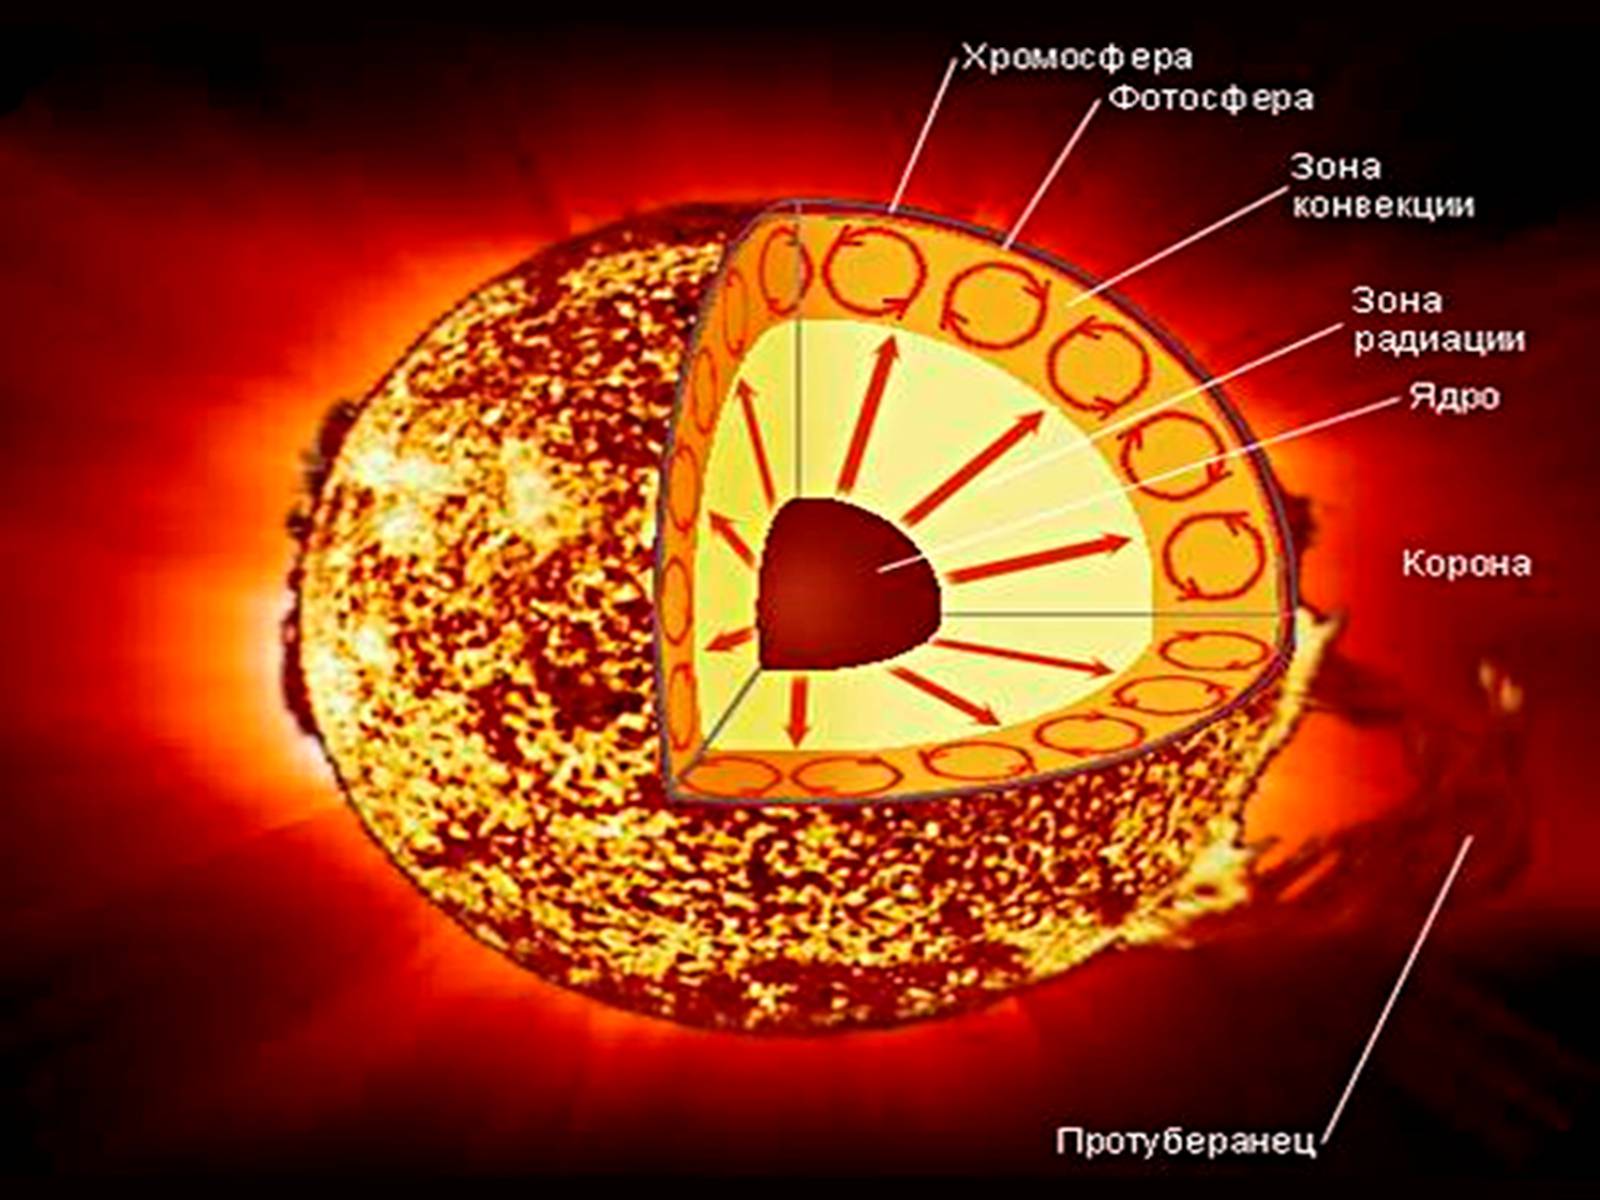 Верхний слой солнечной атмосферы. Строение атмосферы солнца Фотосфера хромосфера Солнечная корона. Строение солнца хромосфера Фотосфера. Внутреннее строение солнца Фотосфера. Строение солнца схема.